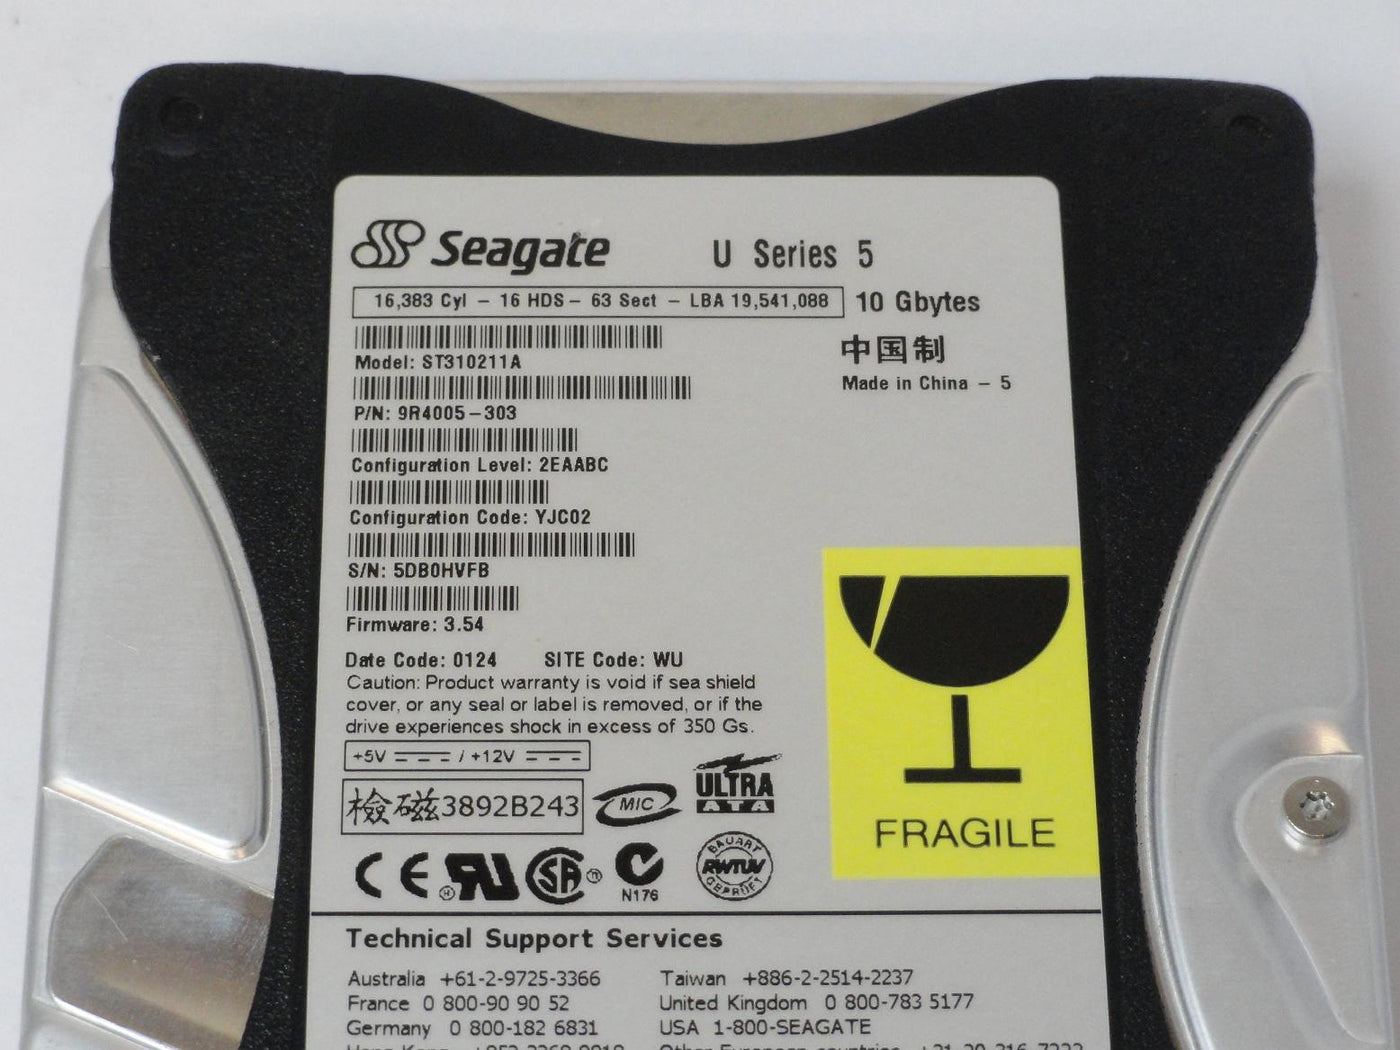 PR12942_9R4005-303_Seagate 10GB IDE 5400rpm 3.5in HDD - Image3